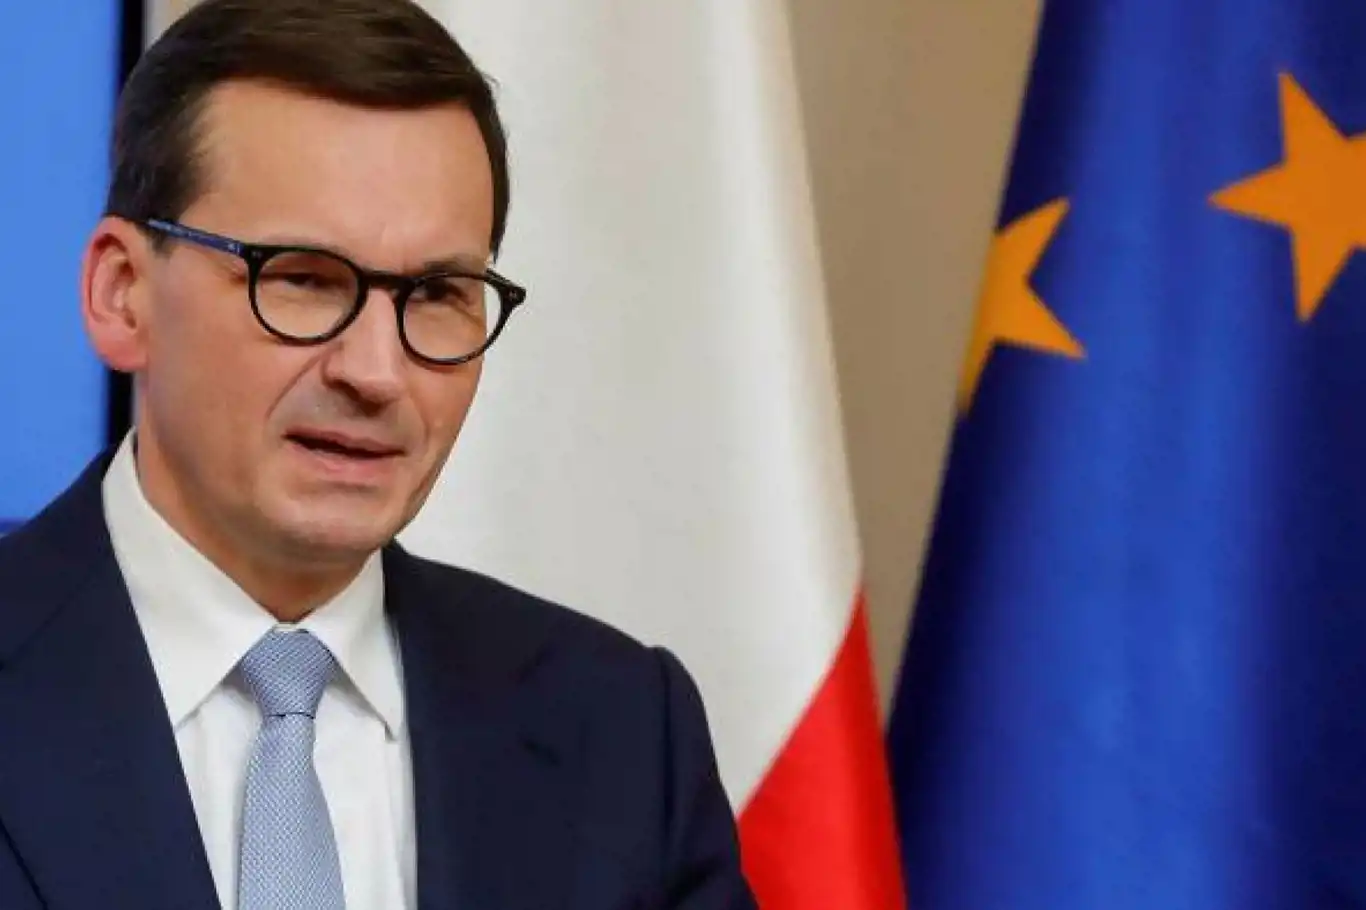 Polonya AB’nin göç yasasına uymayacağını açıkladı